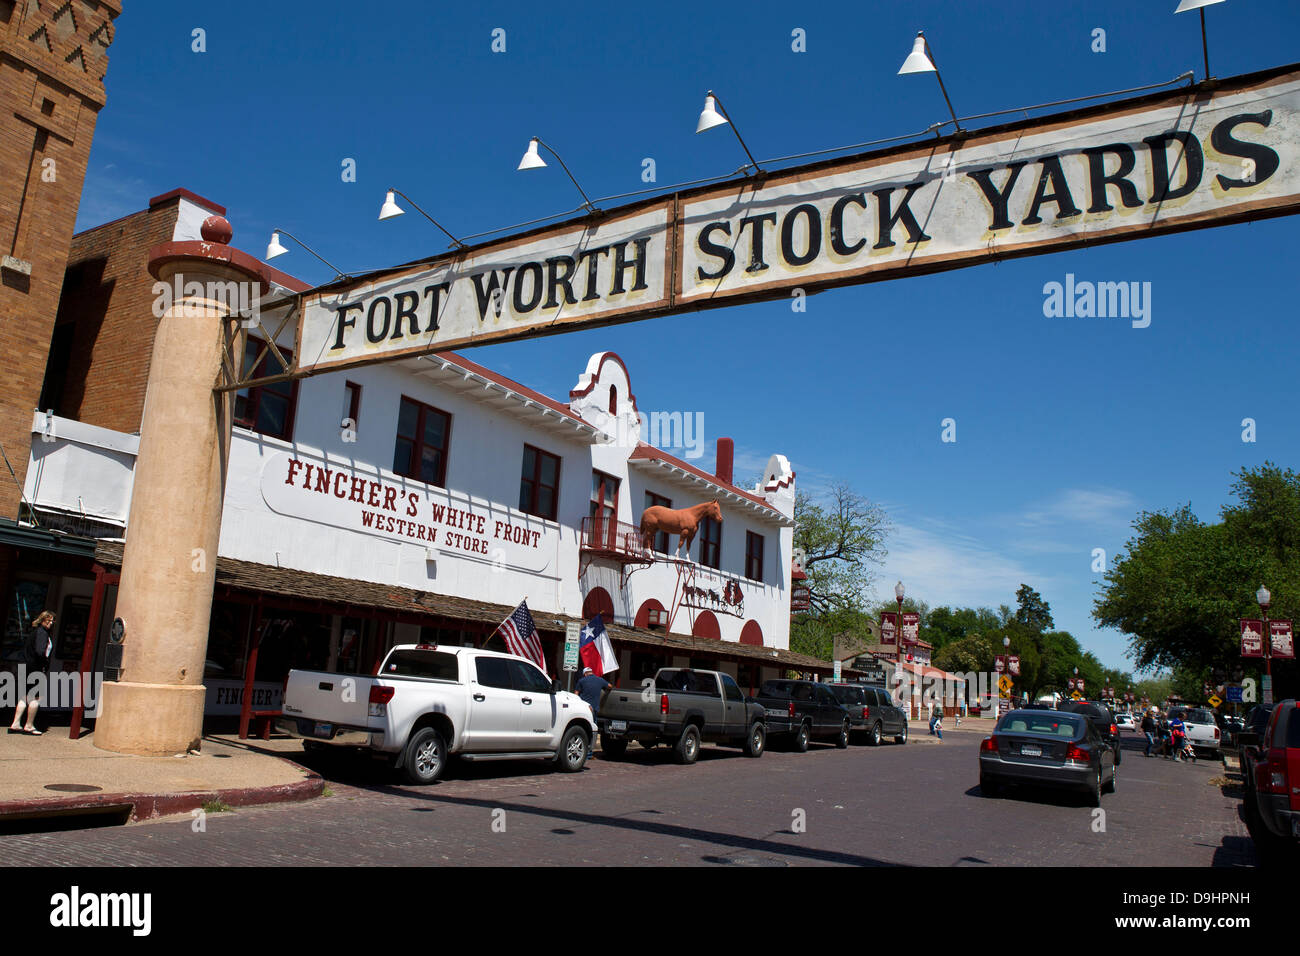 Entrée de Fort Worth Stock Yards sur Exchange St, Ft. Worth, Texas, États-Unis d'Amérique Banque D'Images